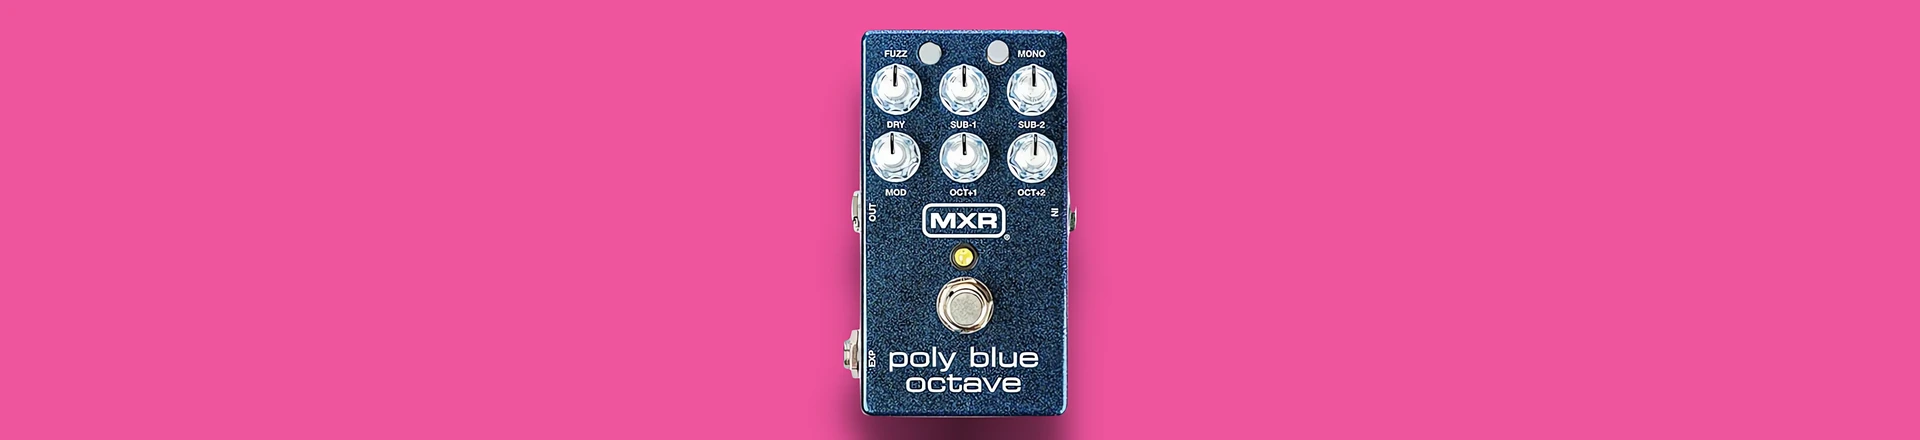 Nowy efekt gitarowy MXR inspirowany kultowym brzmieniem Blue Box 